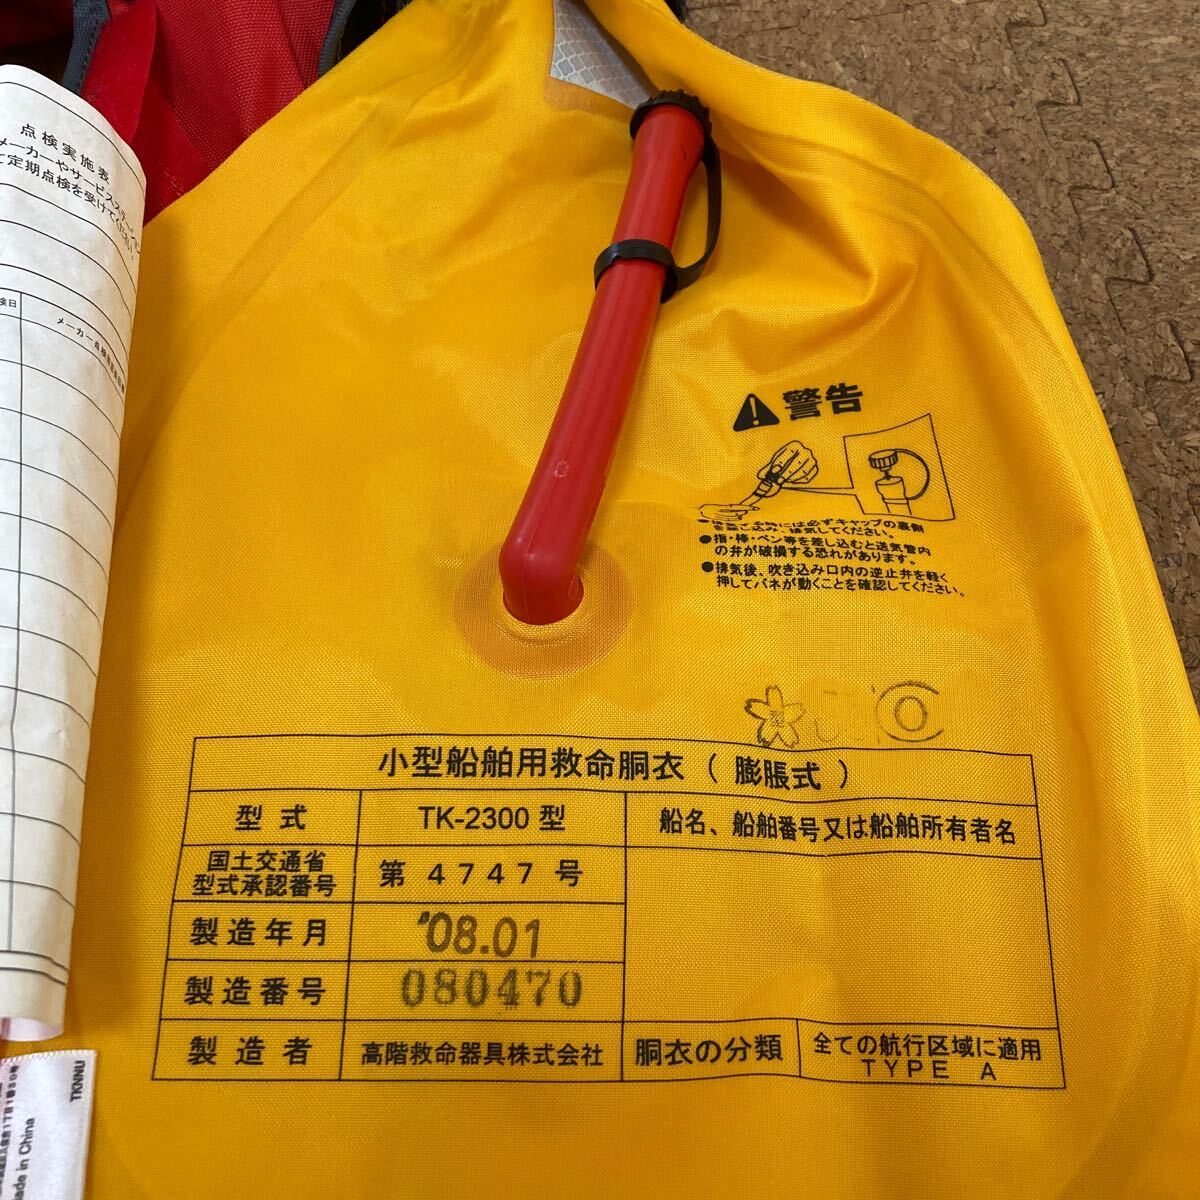 takamiyaPOINT BAY отметка Bay спасательный жилет 2 шт. комплект Sakura Mark иметь маленький размер судовой спасательный жилет (.. тип )